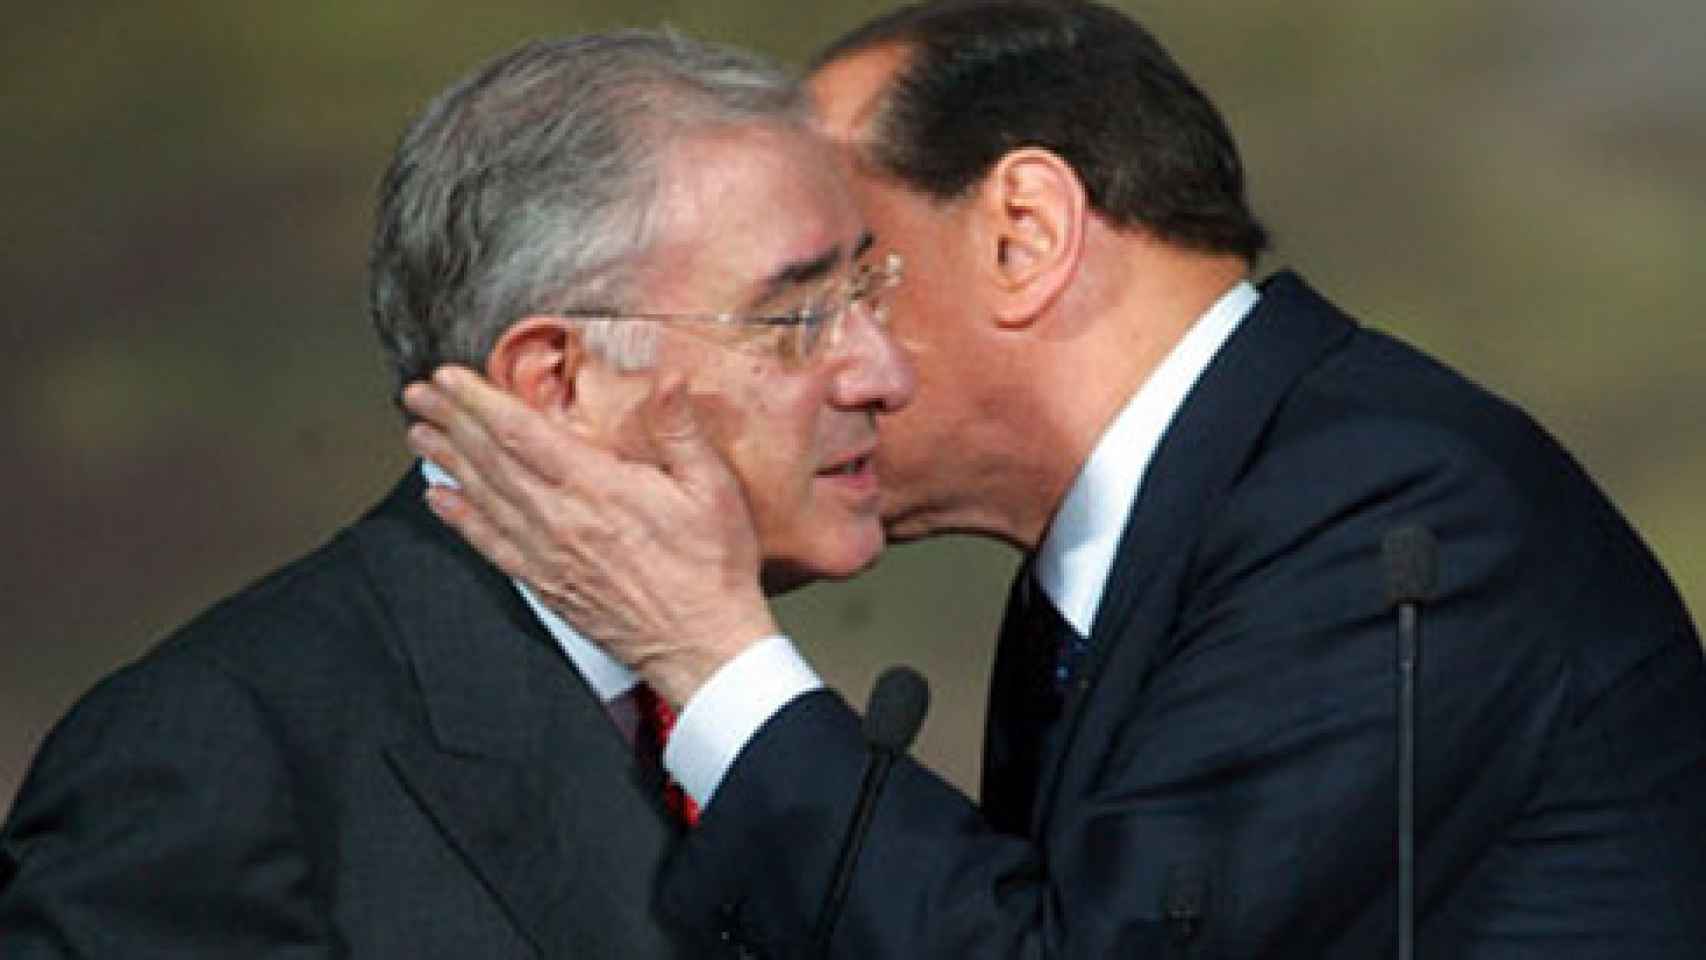 El ex primer ministro italiano Silvio Berlusconi besa al entonces senador Marcello dell'Utri.